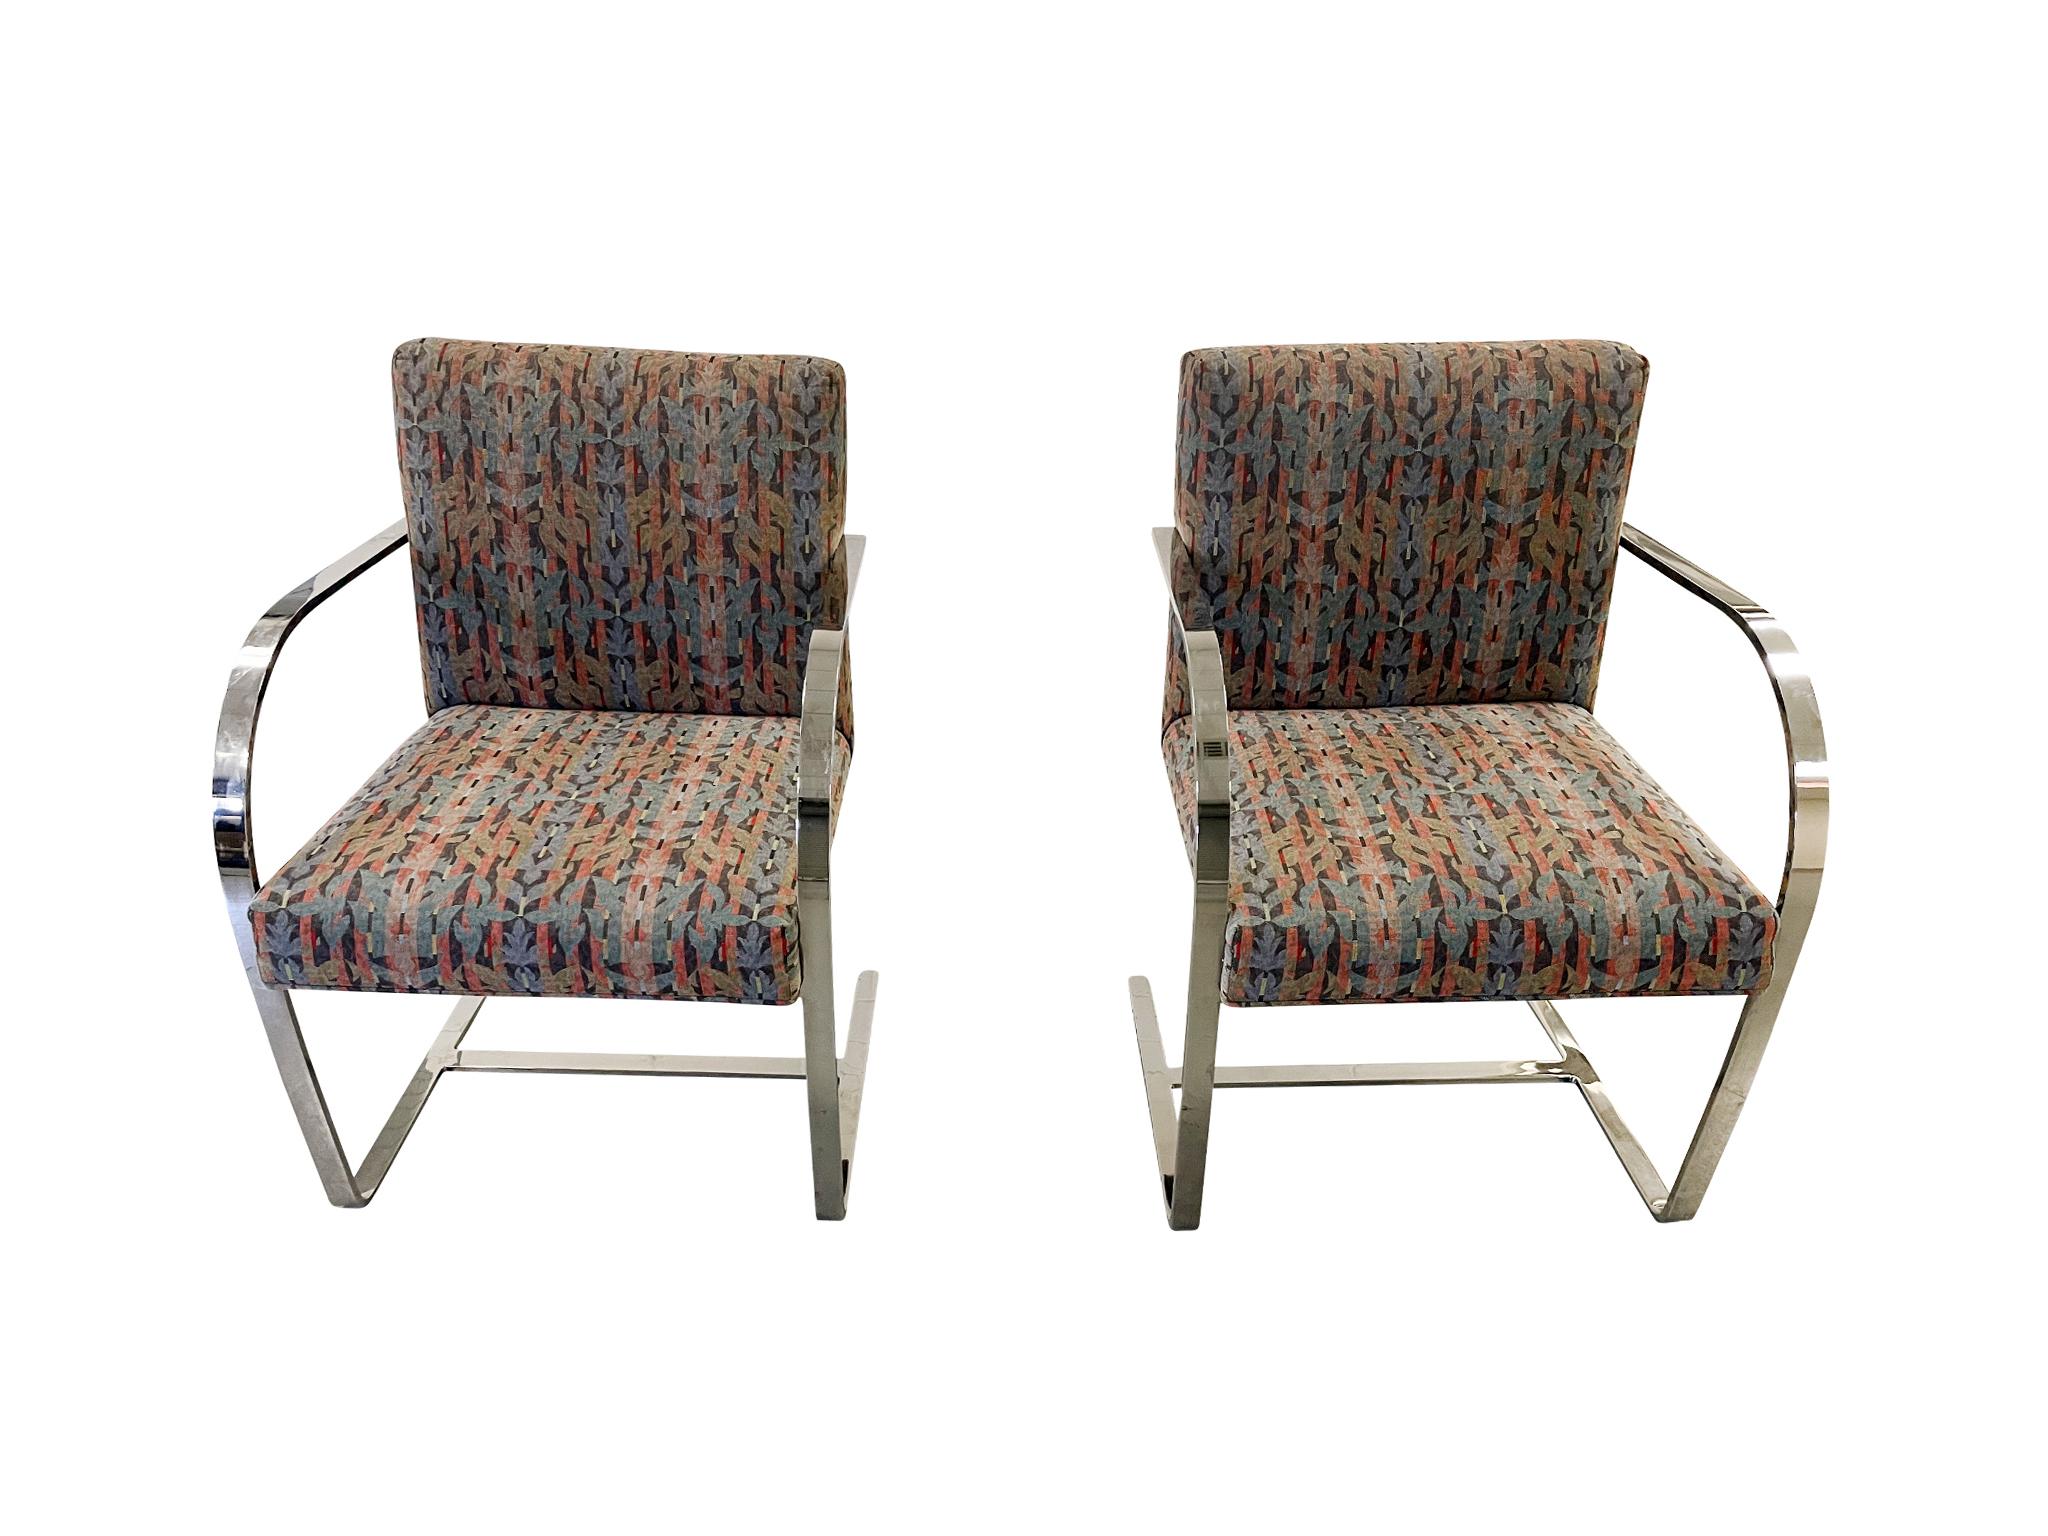 Set bestehend aus 6 verchromten Sesseln, die Ludwig Mies van der Rohe zugeschrieben werden. Die ursprünglich in den 1930er Jahren entworfenen Brünner Stühle sind für ihre flache, verchromte Freischwingerstruktur berühmt. Diese besonderen Stühle sind